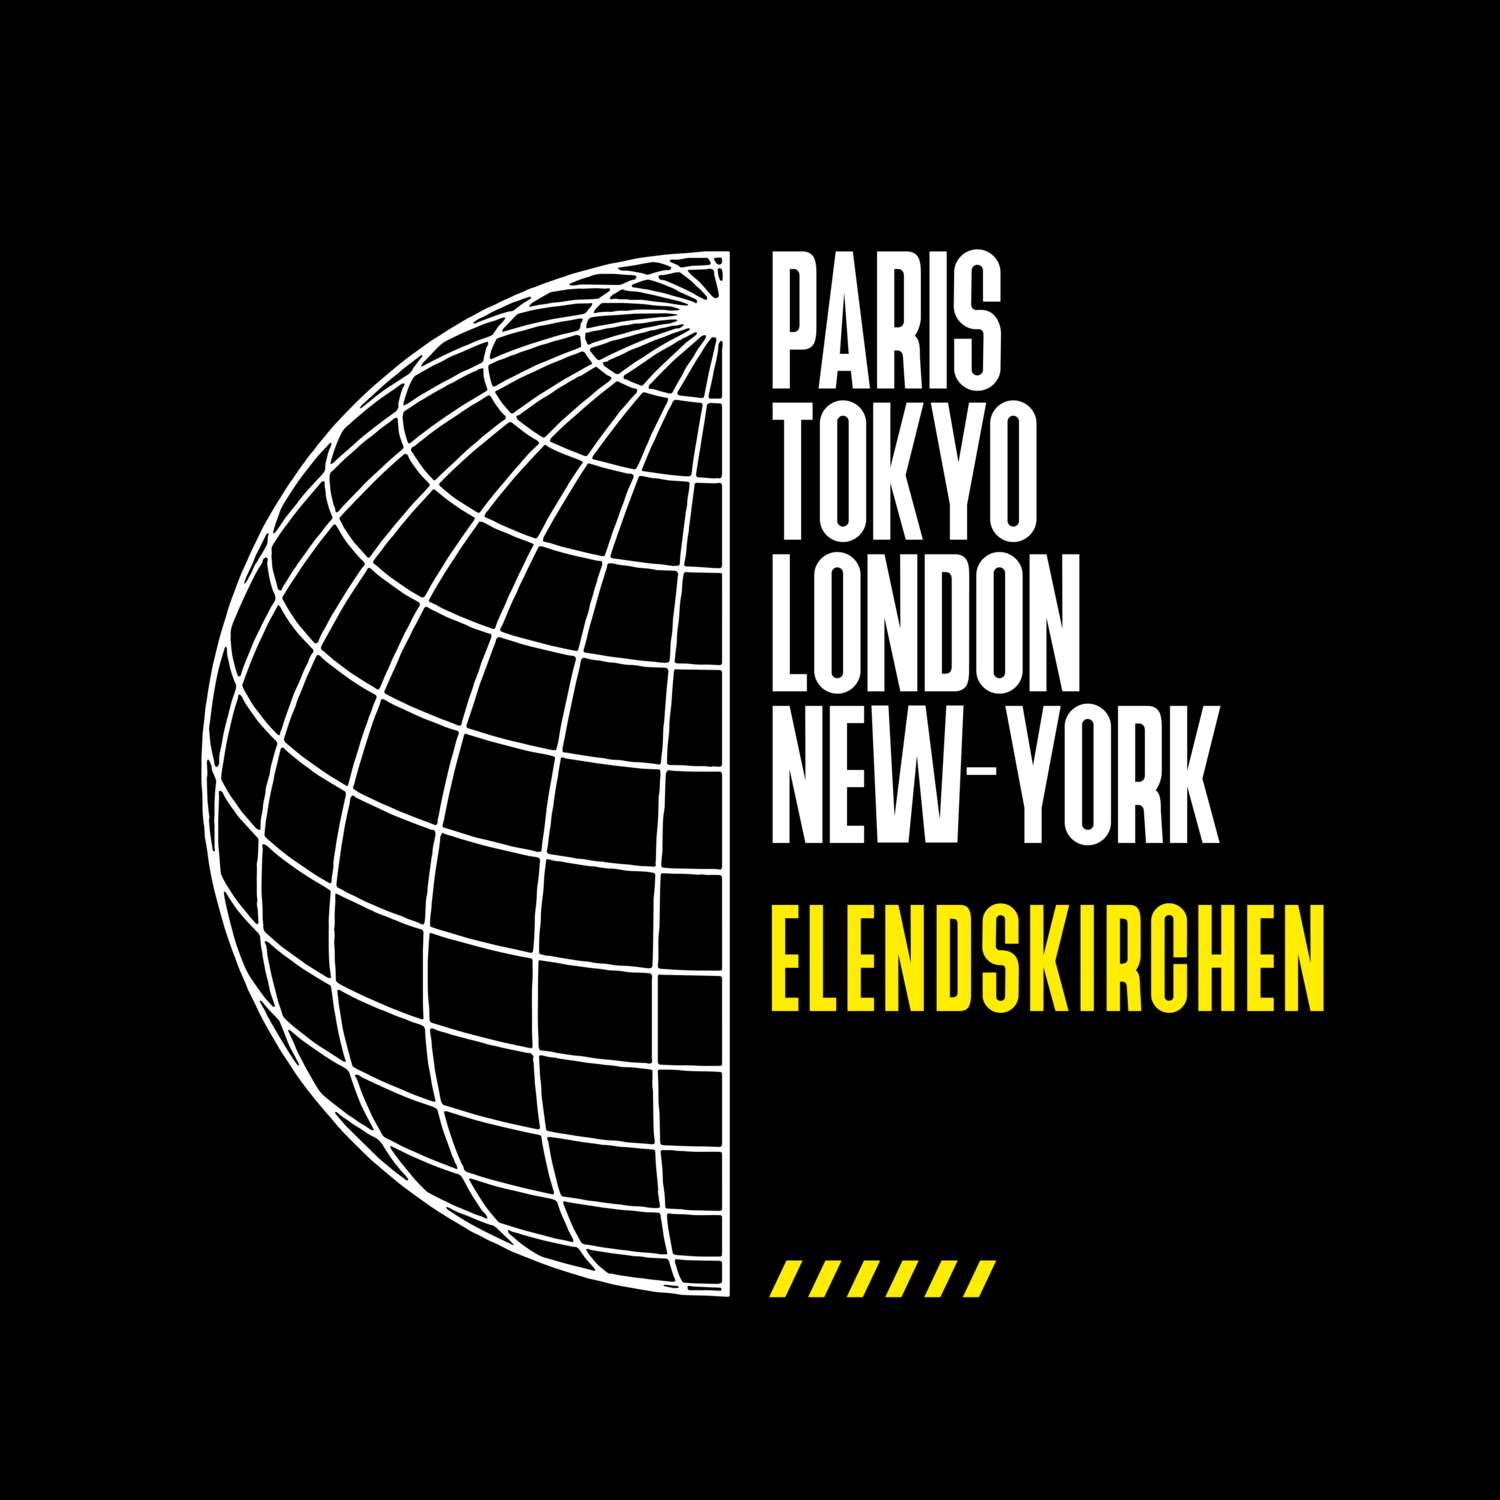 Elendskirchen T-Shirt »Paris Tokyo London«